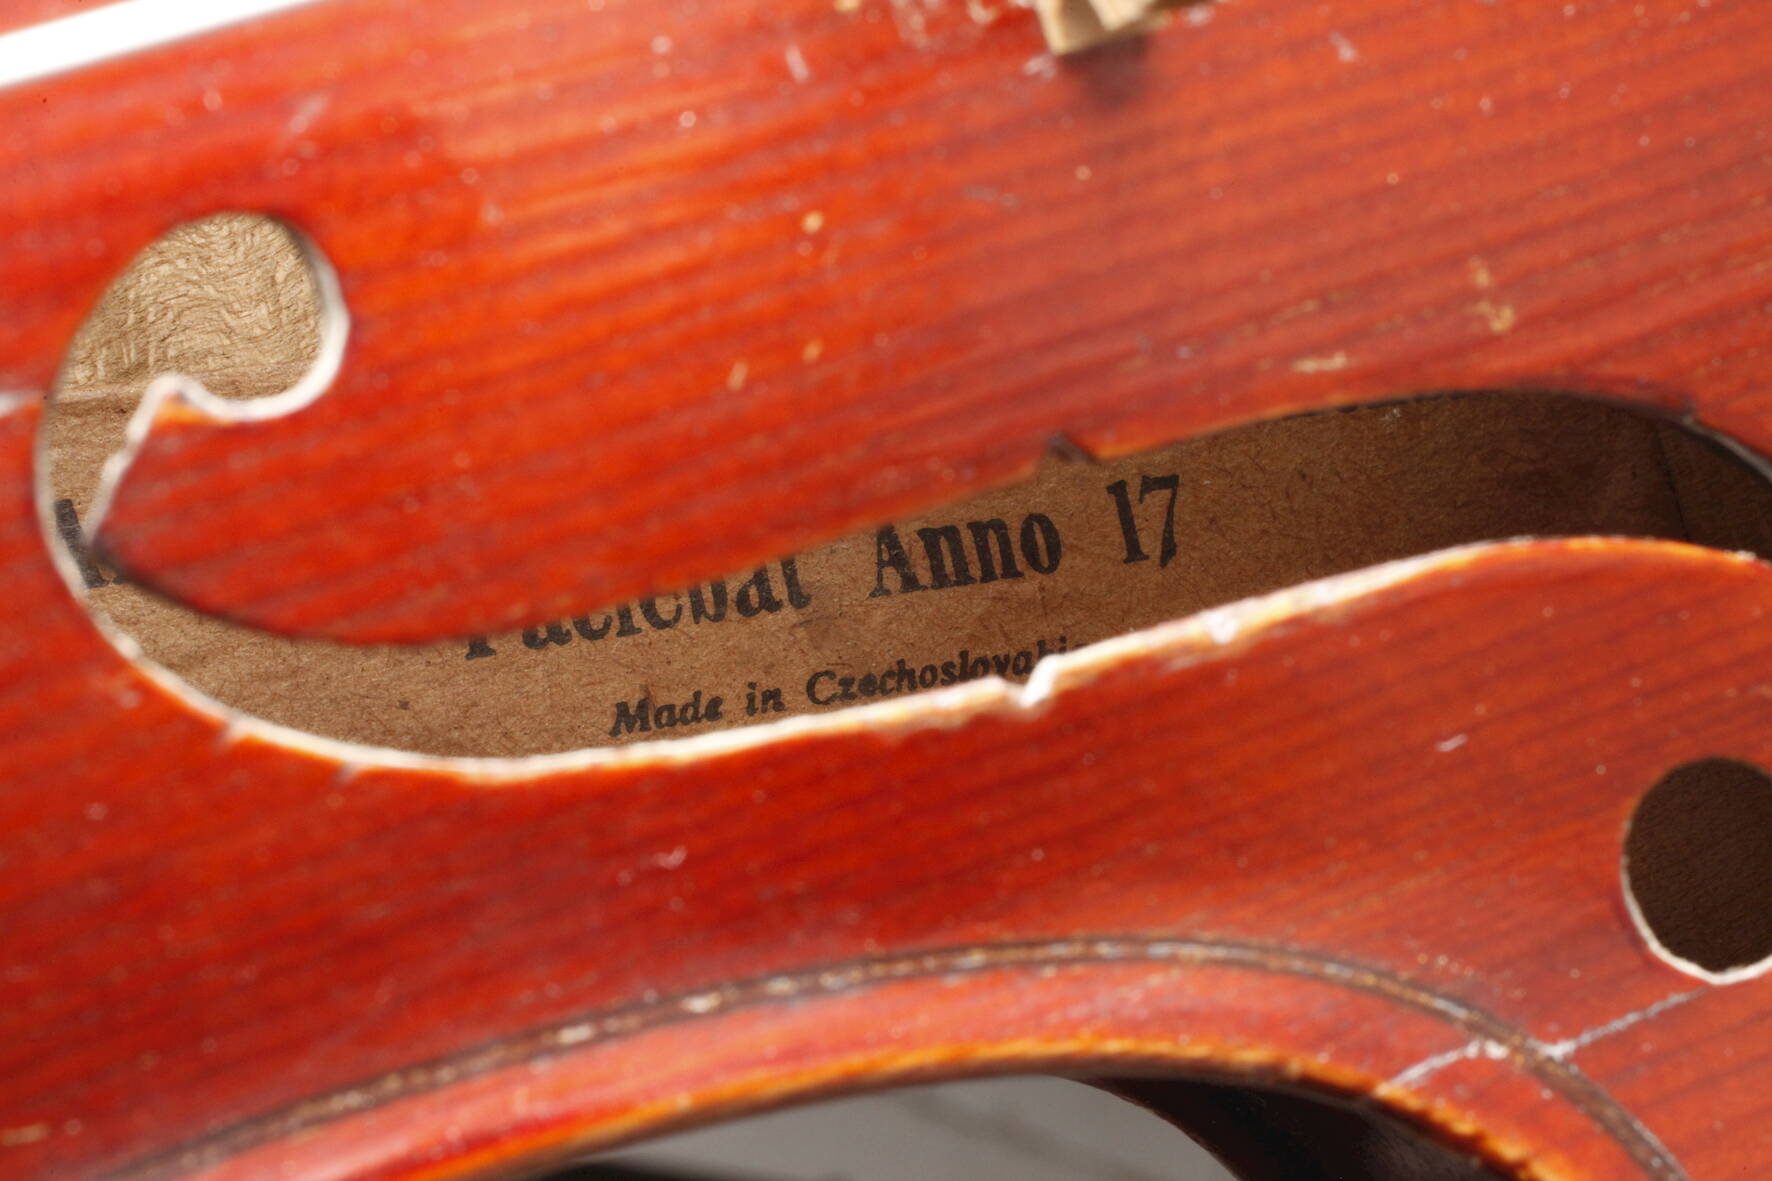 Violine1930er Jahre, innen auf Modellzettel bez. Antonius Stradivarius Cremonensis, Made in - Image 8 of 8